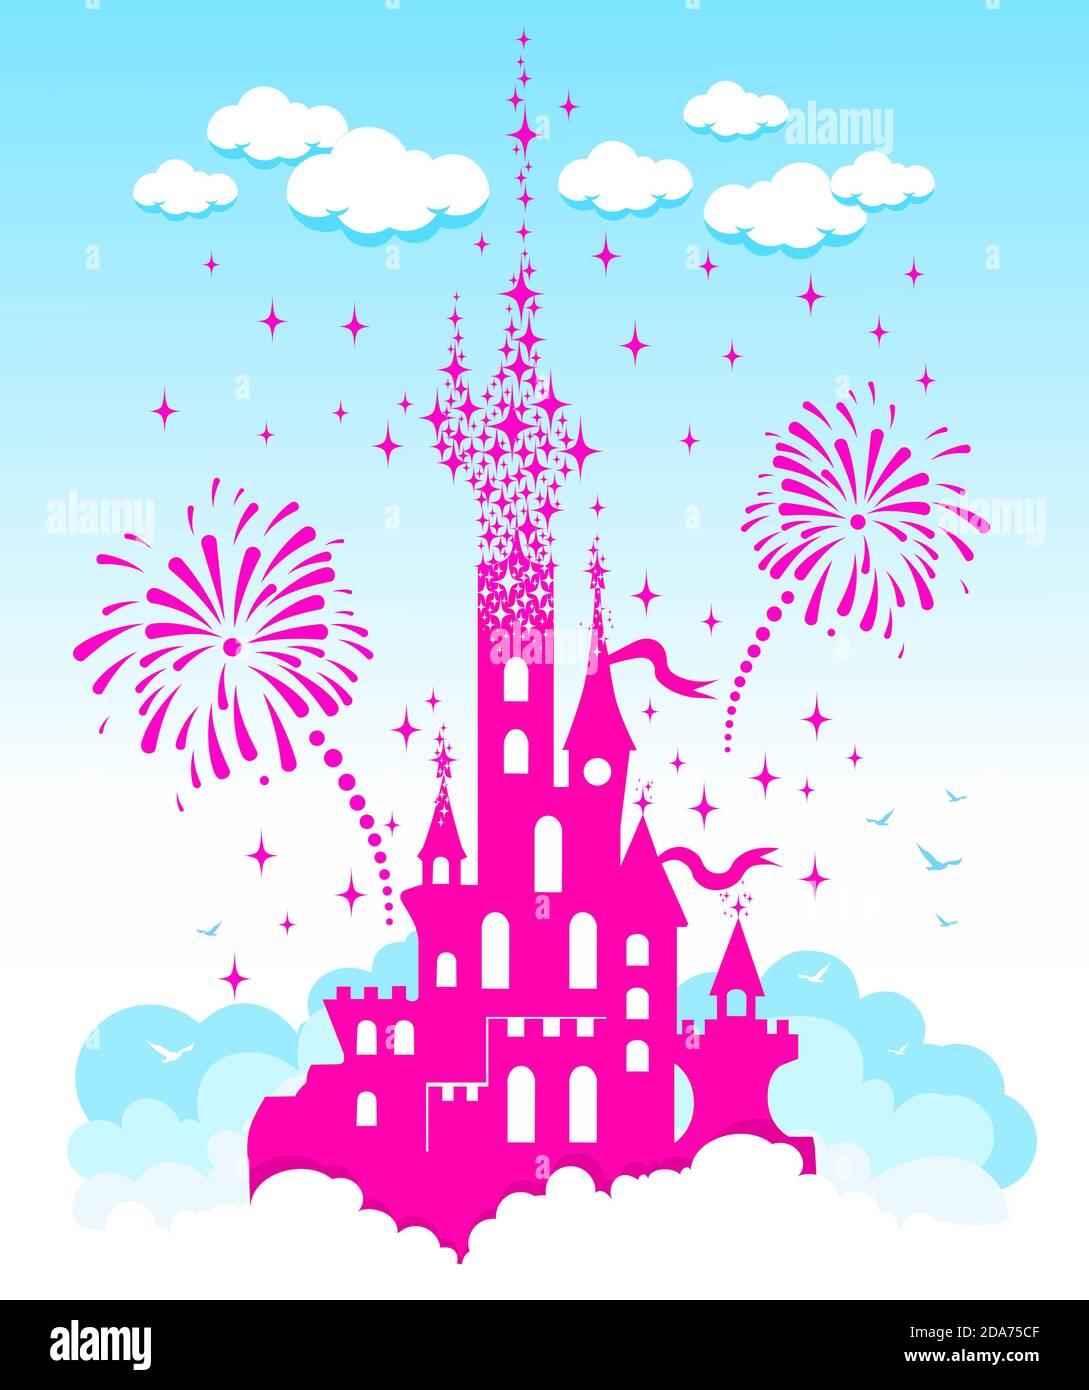 Princess Castle. Fantasy rosa fliegenden Palast in den Wolken auf dem Hintergrund von Feuerwerk und Sterne. Märchenhafter Königlicher Mittelalterlicher Paradies Palast. Zeichentrickfilm Stock Vektor